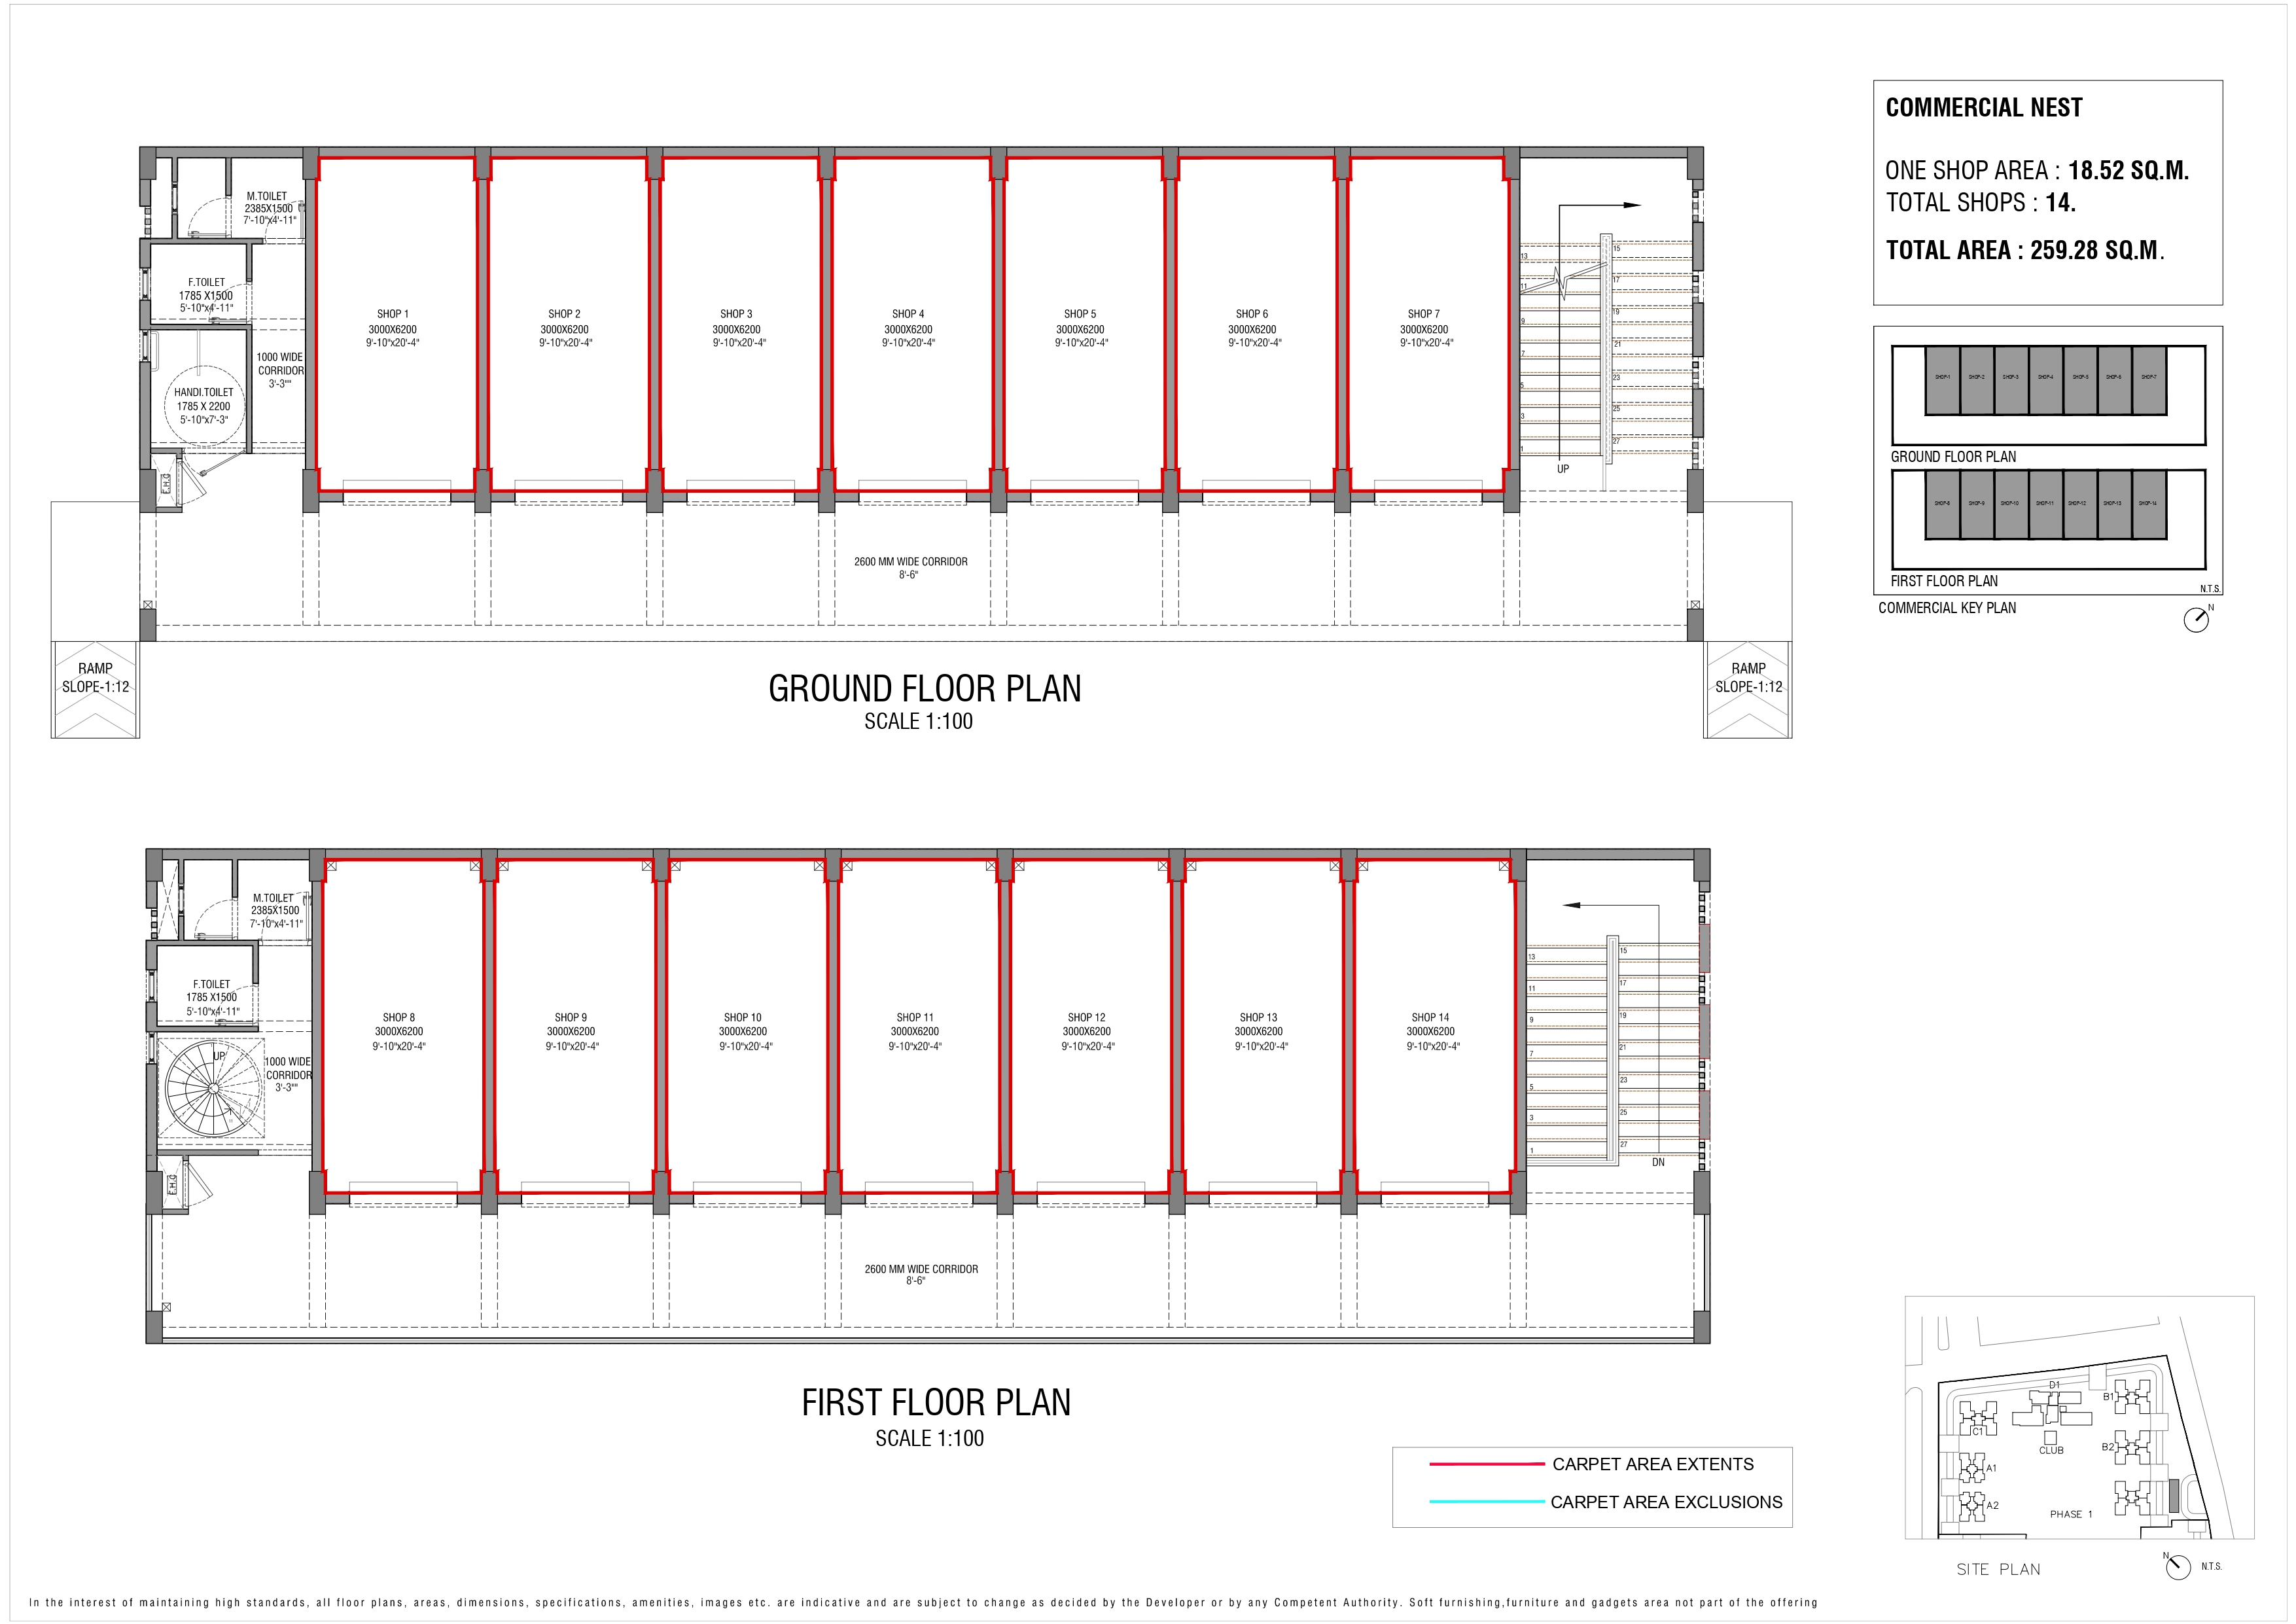 Godrej Nest Commercial Floor Plan